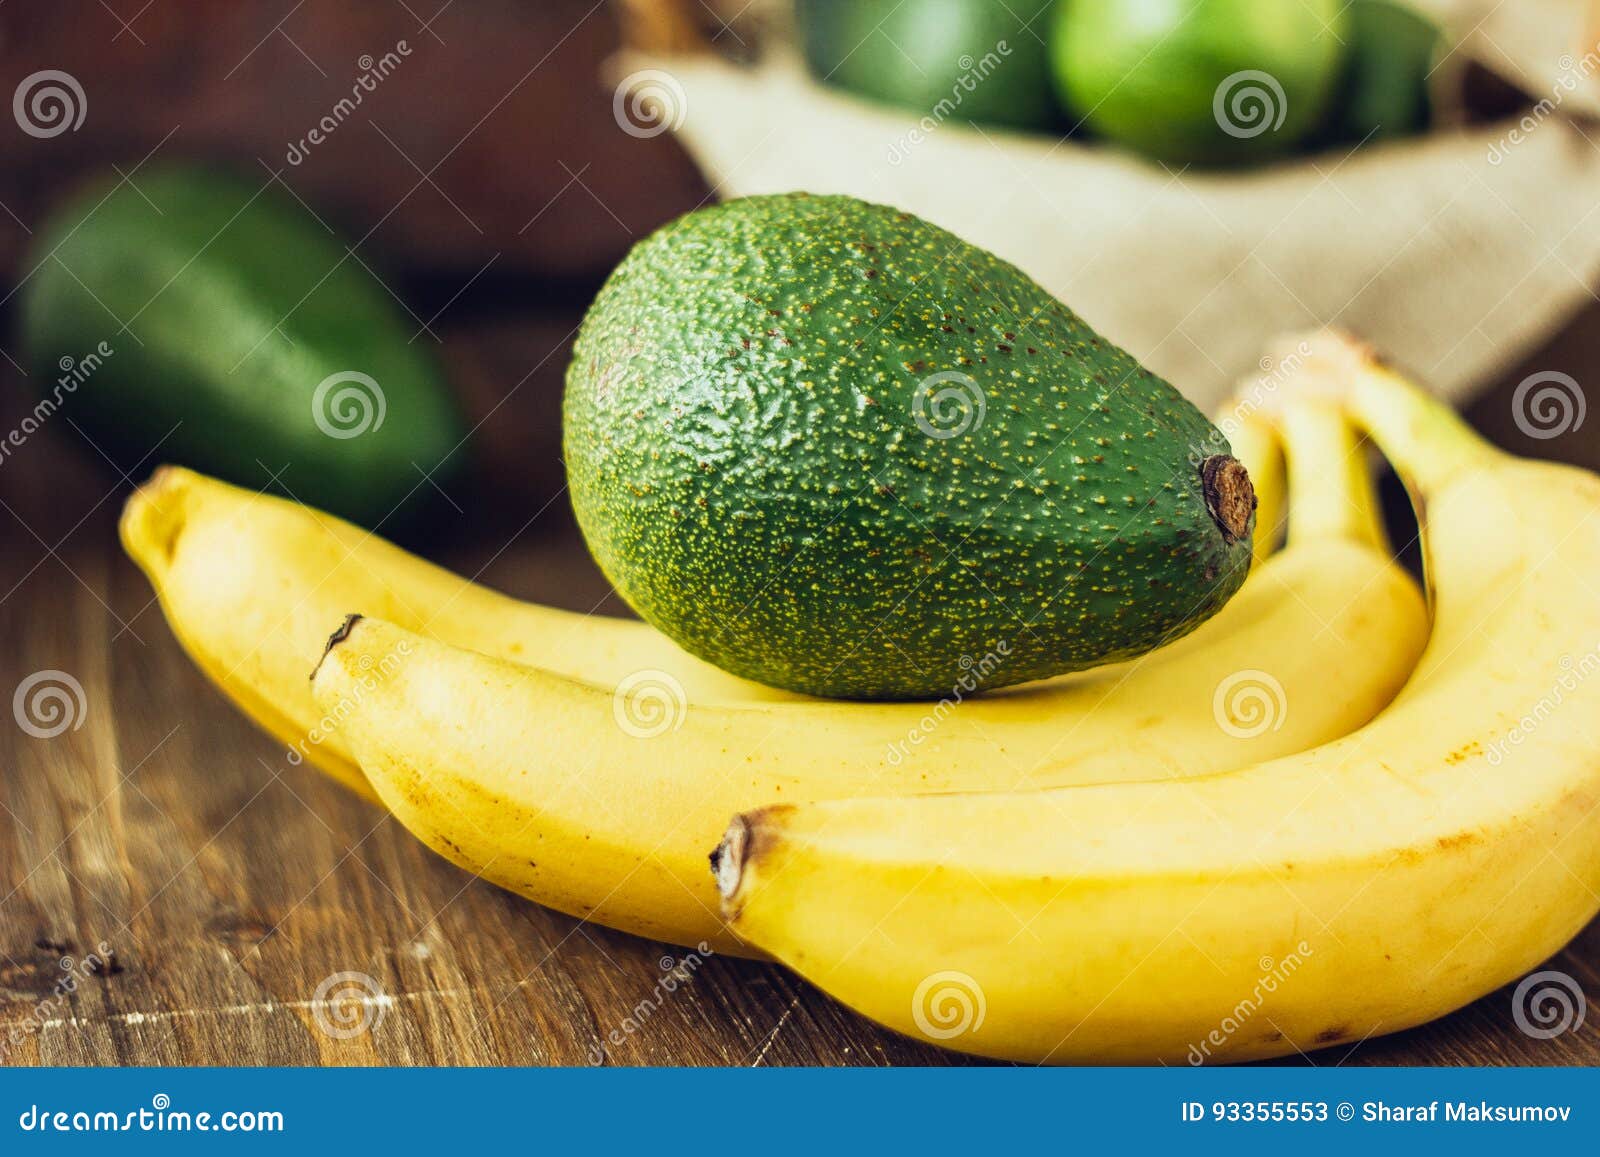 Alternatief Altaar Bevestigen aan Avocado En Banaan Over Bruine Houten Achtergrond Stock Afbeelding - Image  of heerlijk, banaan: 93355553